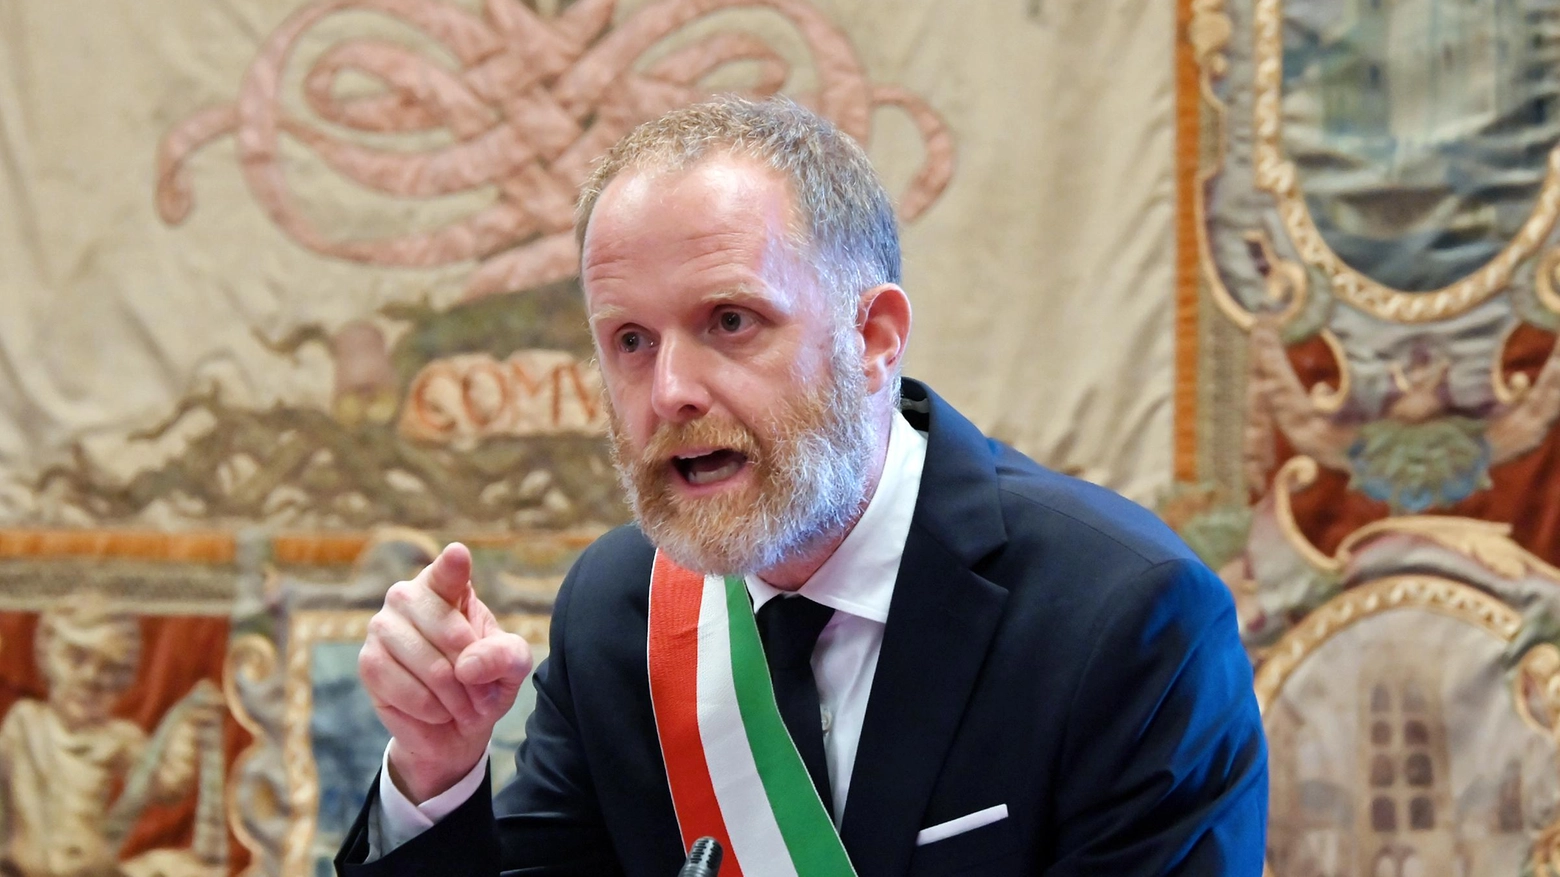 

"Turismo a Como: il sindaco condanna gli eccessi"